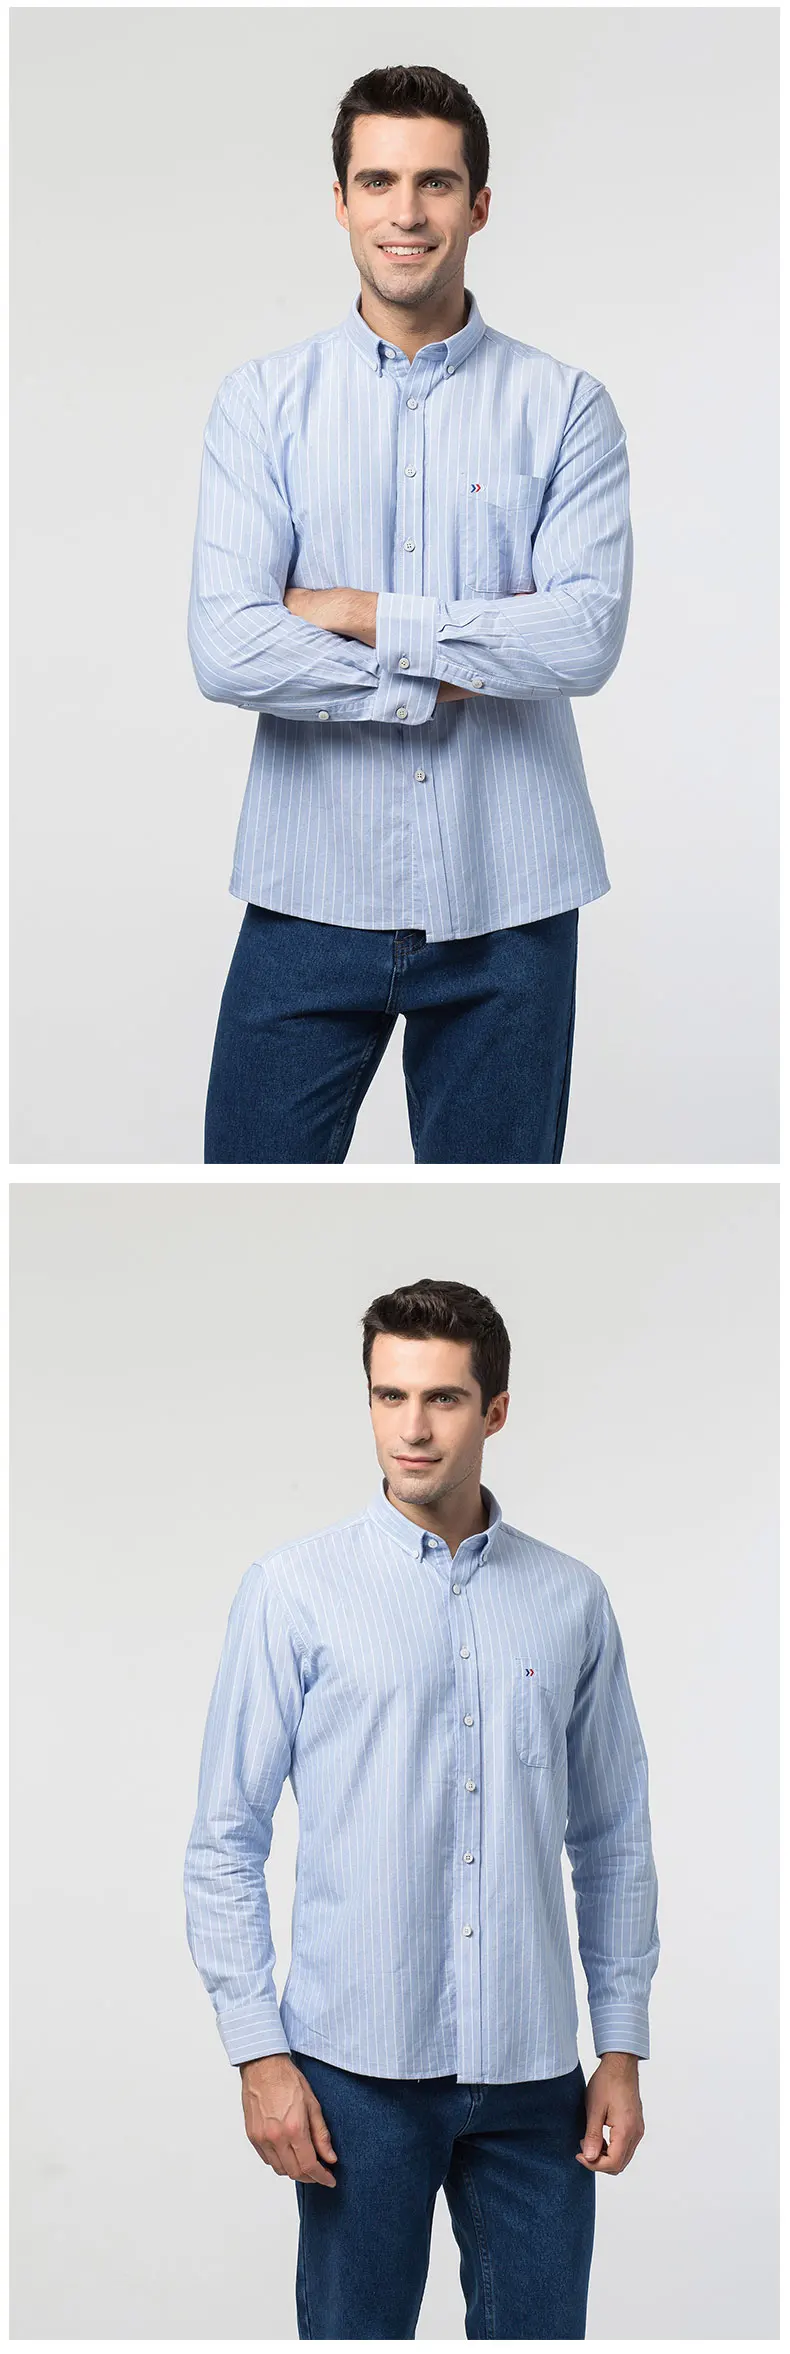 100% хлопок 2018 новые мужские в полоску повседневные платья рубашки Демисезонный с длинным рукавом Slim Fit Мужской Блузка Высокое качество